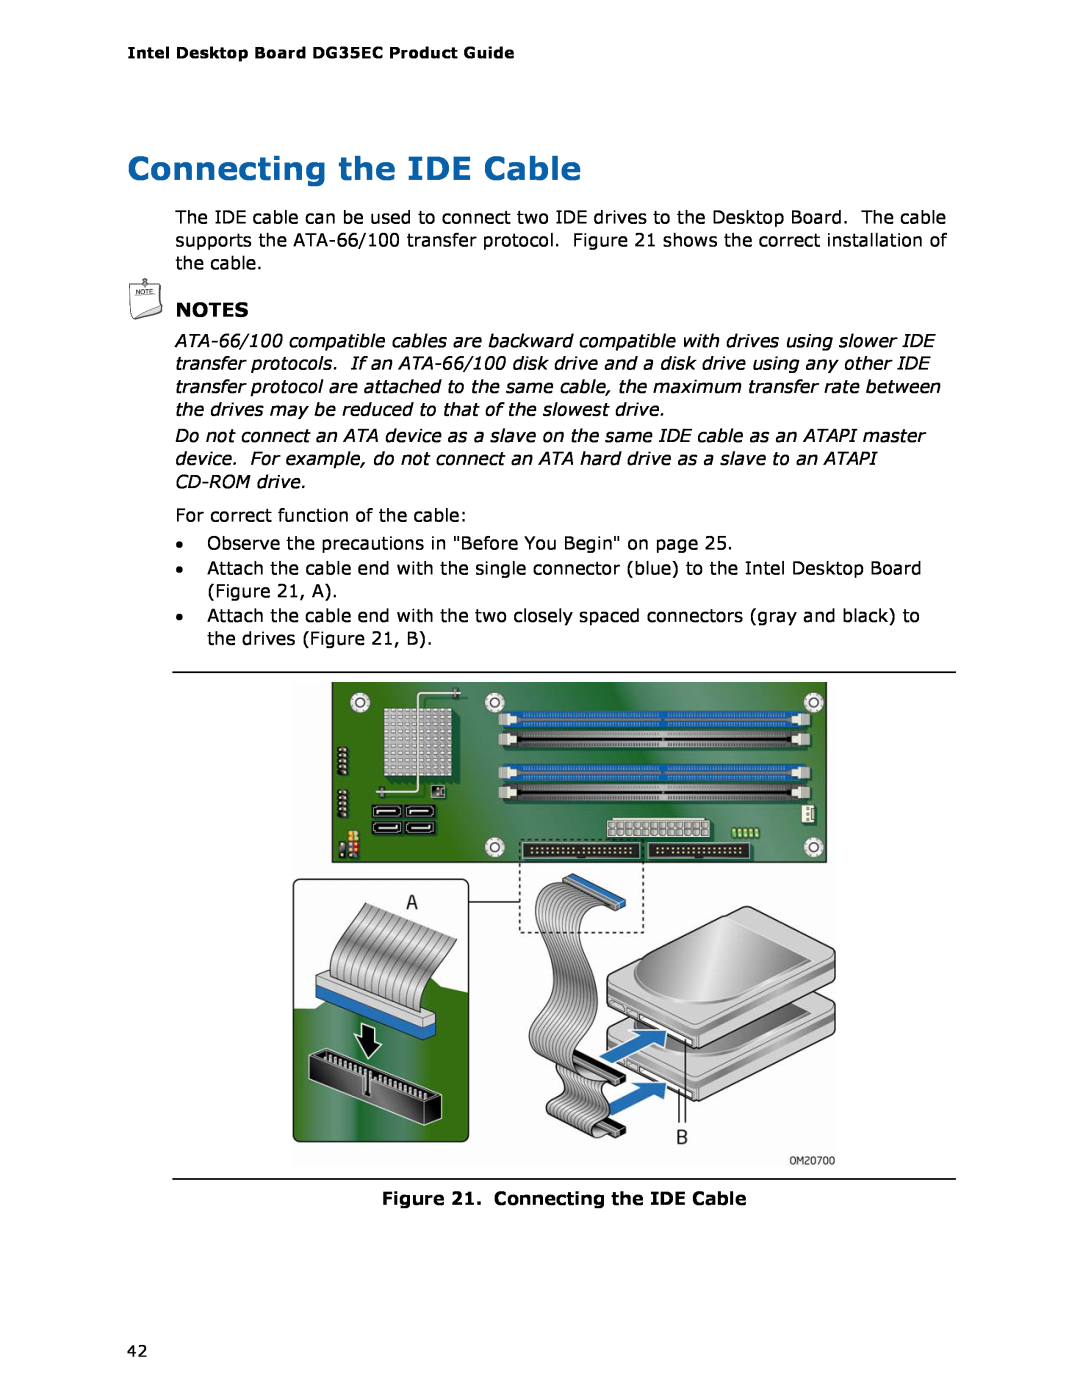 Intel Intel Desktop Board, DG35EC manual Connecting the IDE Cable 